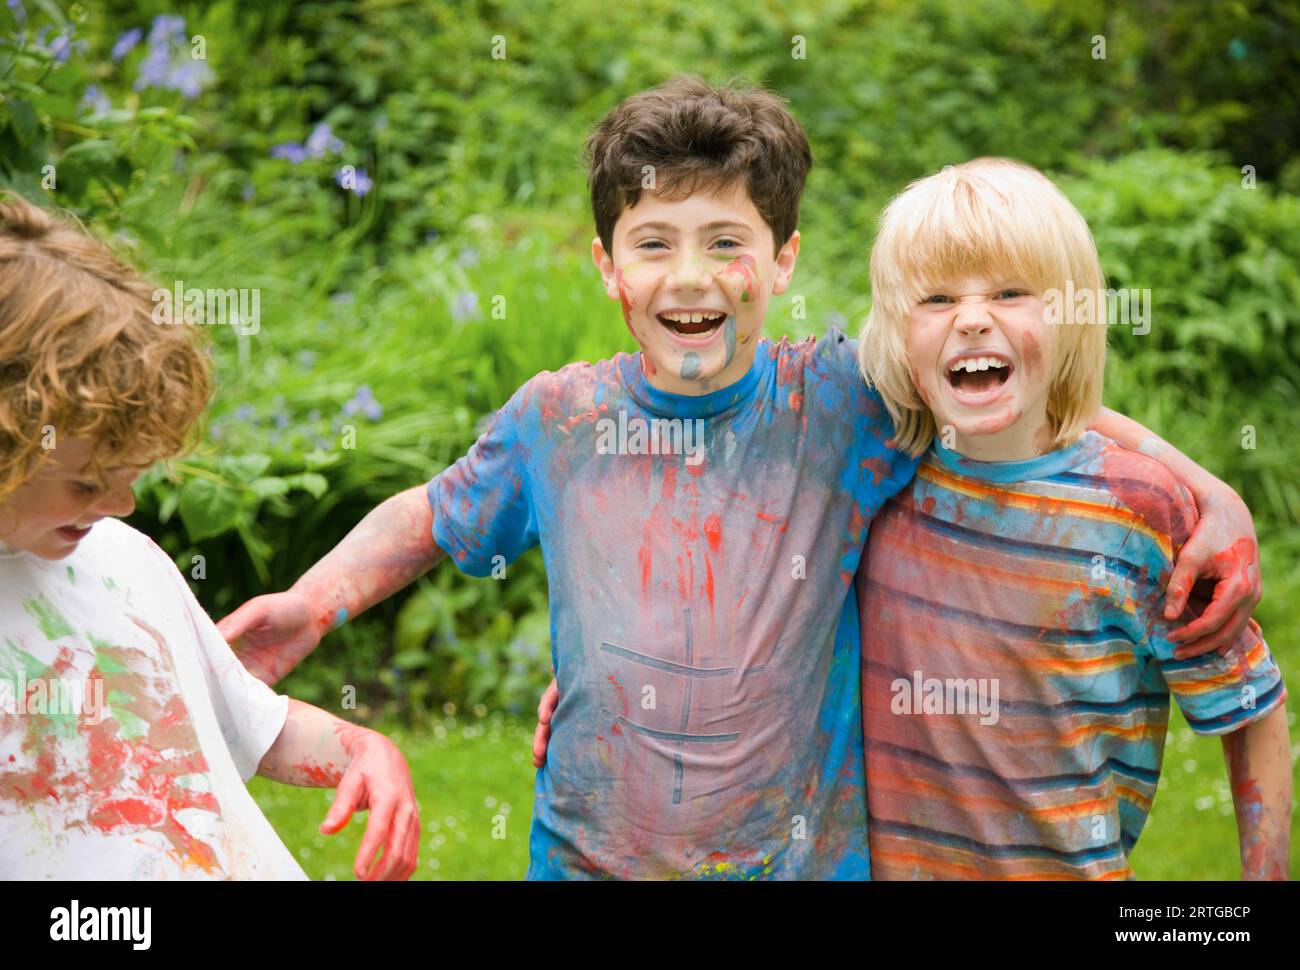 Jeunes garçons couverts de peinture aquarelle riant dans un jardin Banque D'Images